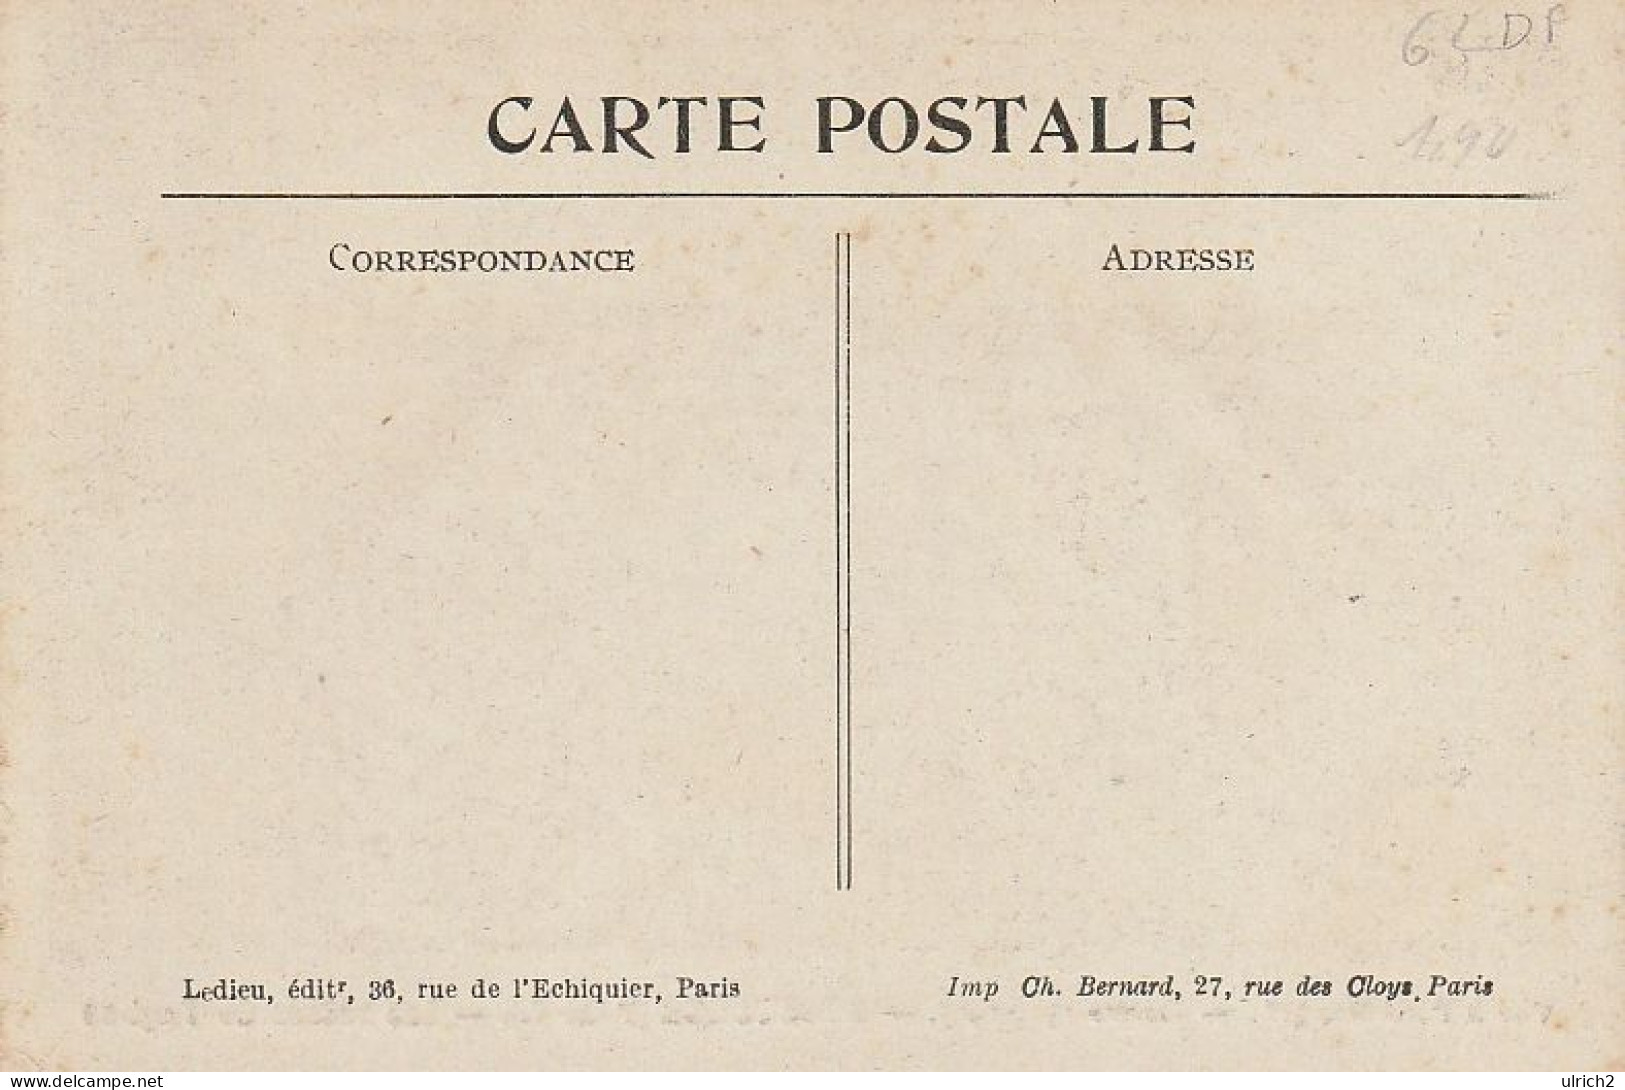 AK Hébuterne  - Les Ruines De L'église - Ca. 1915 (68197) - Avesnes Le Comte